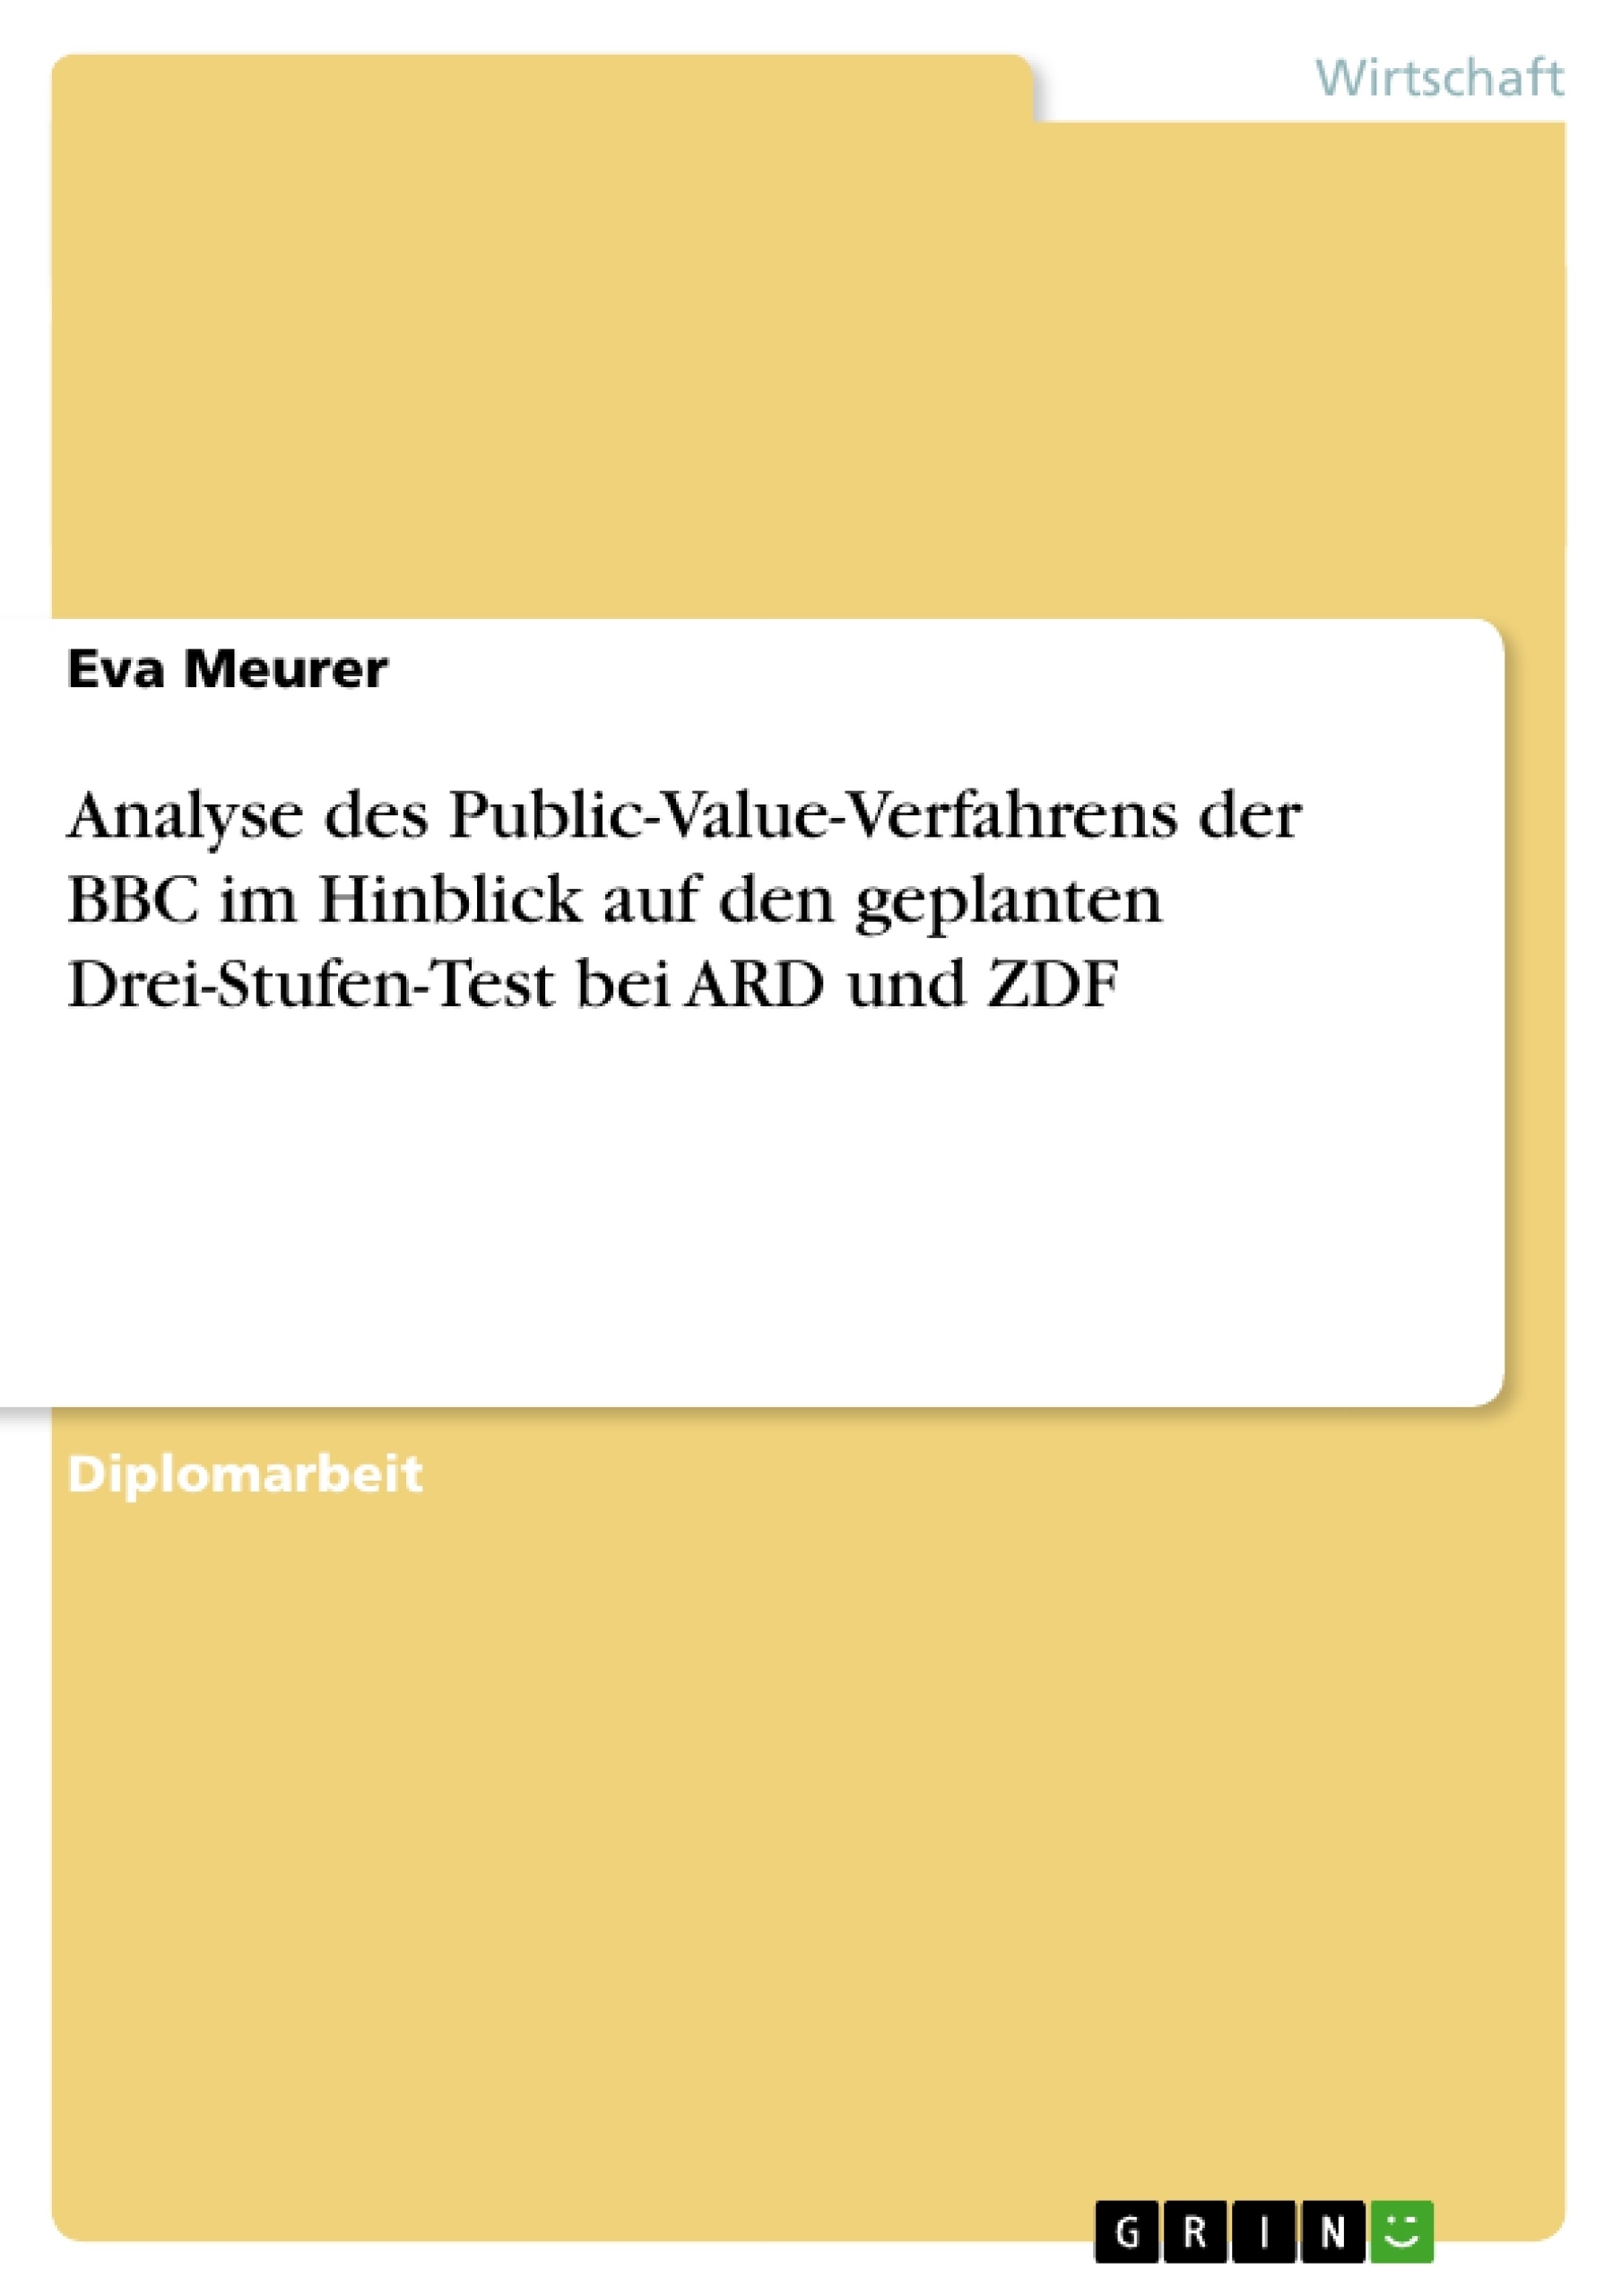 Titre: Analyse des Public-Value-Verfahrens der BBC im Hinblick auf den geplanten Drei-Stufen-Test  bei ARD und ZDF